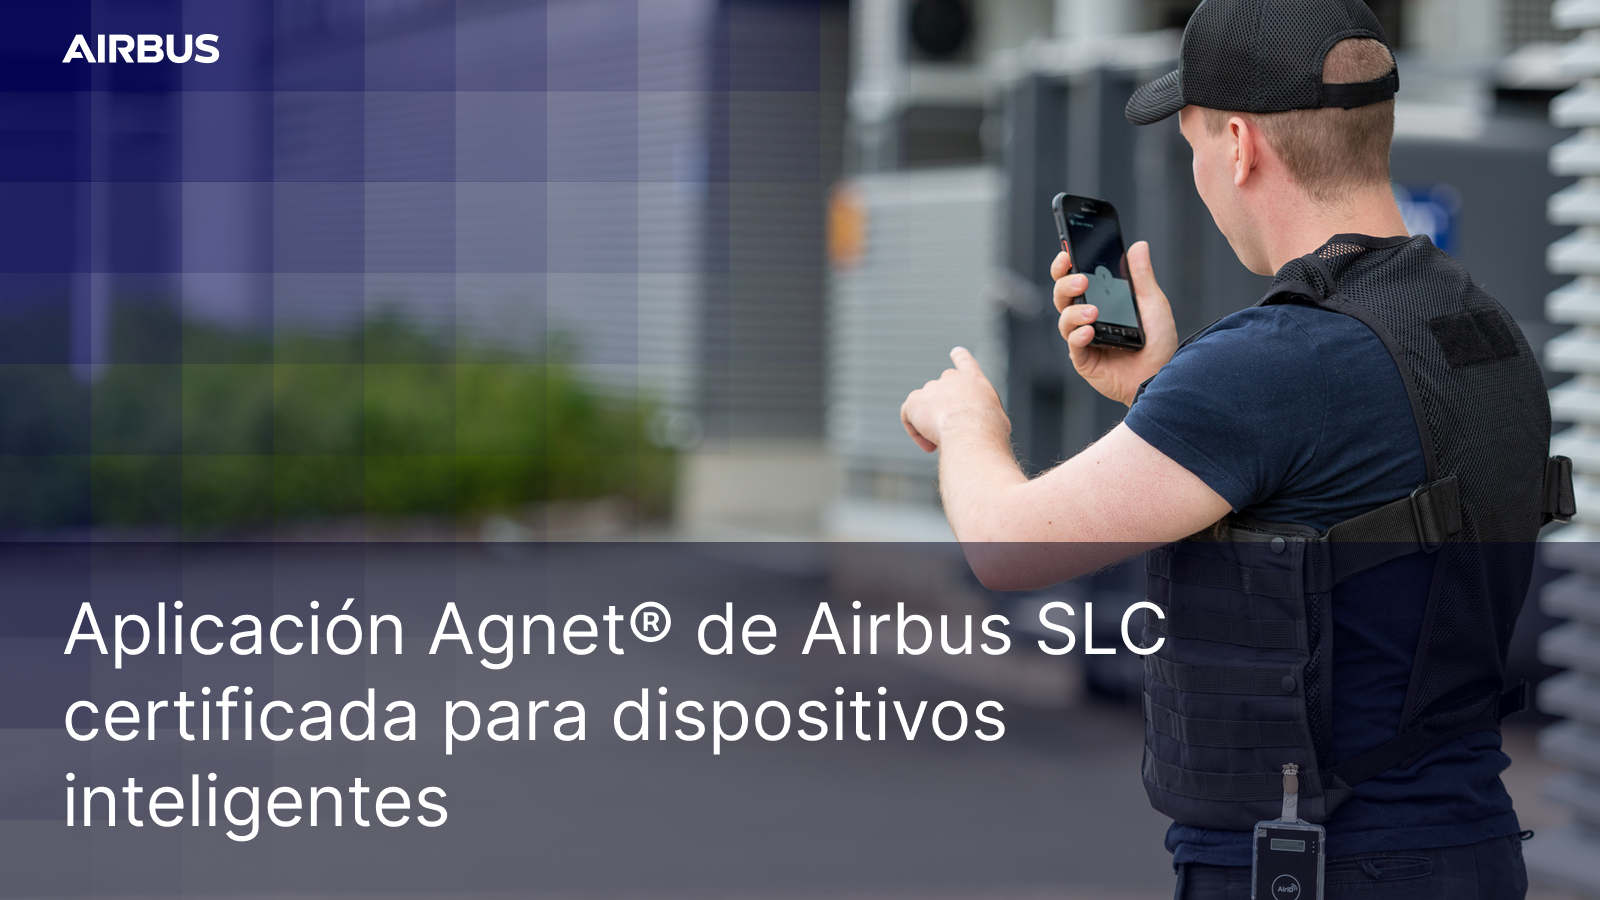 Aplicación Agnet de Airbus SLC certificada para dispositivos inteligentes 